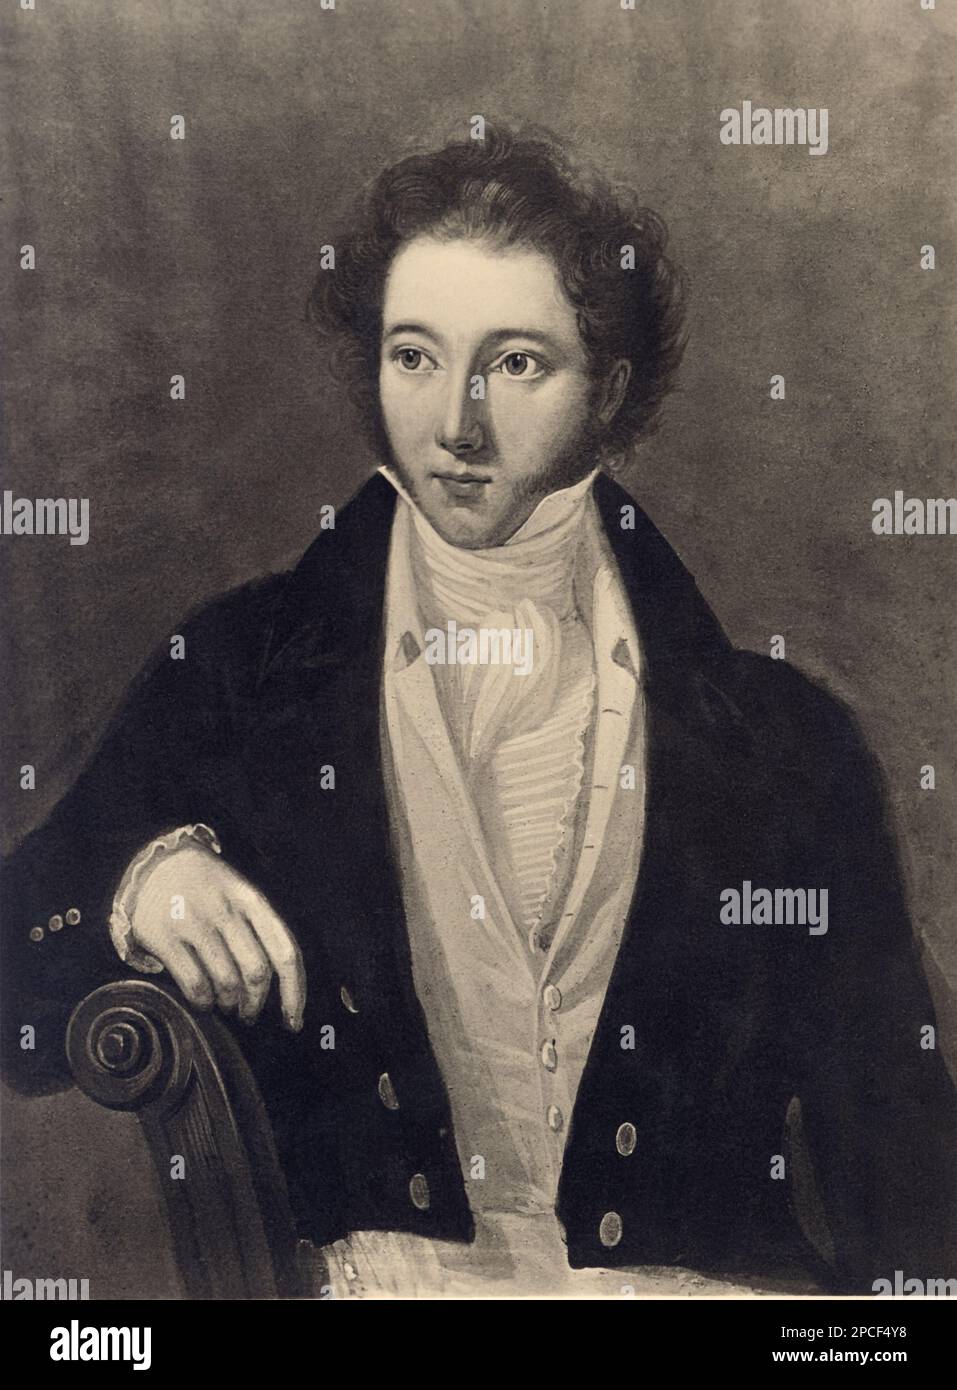 Il celebre compositore d'opera VINCENZO BELLINI ( 1801 - 1835 ) - COMPOSITORE - OPERA LIRICA - CLASSICA - CLASSICA - RITRATTO - ritmo - MUSICA - MUSICA - BARBA - BARBA - BARBA - cravatta - colletto - colletto --- ARCHIVIO GBB Foto Stock